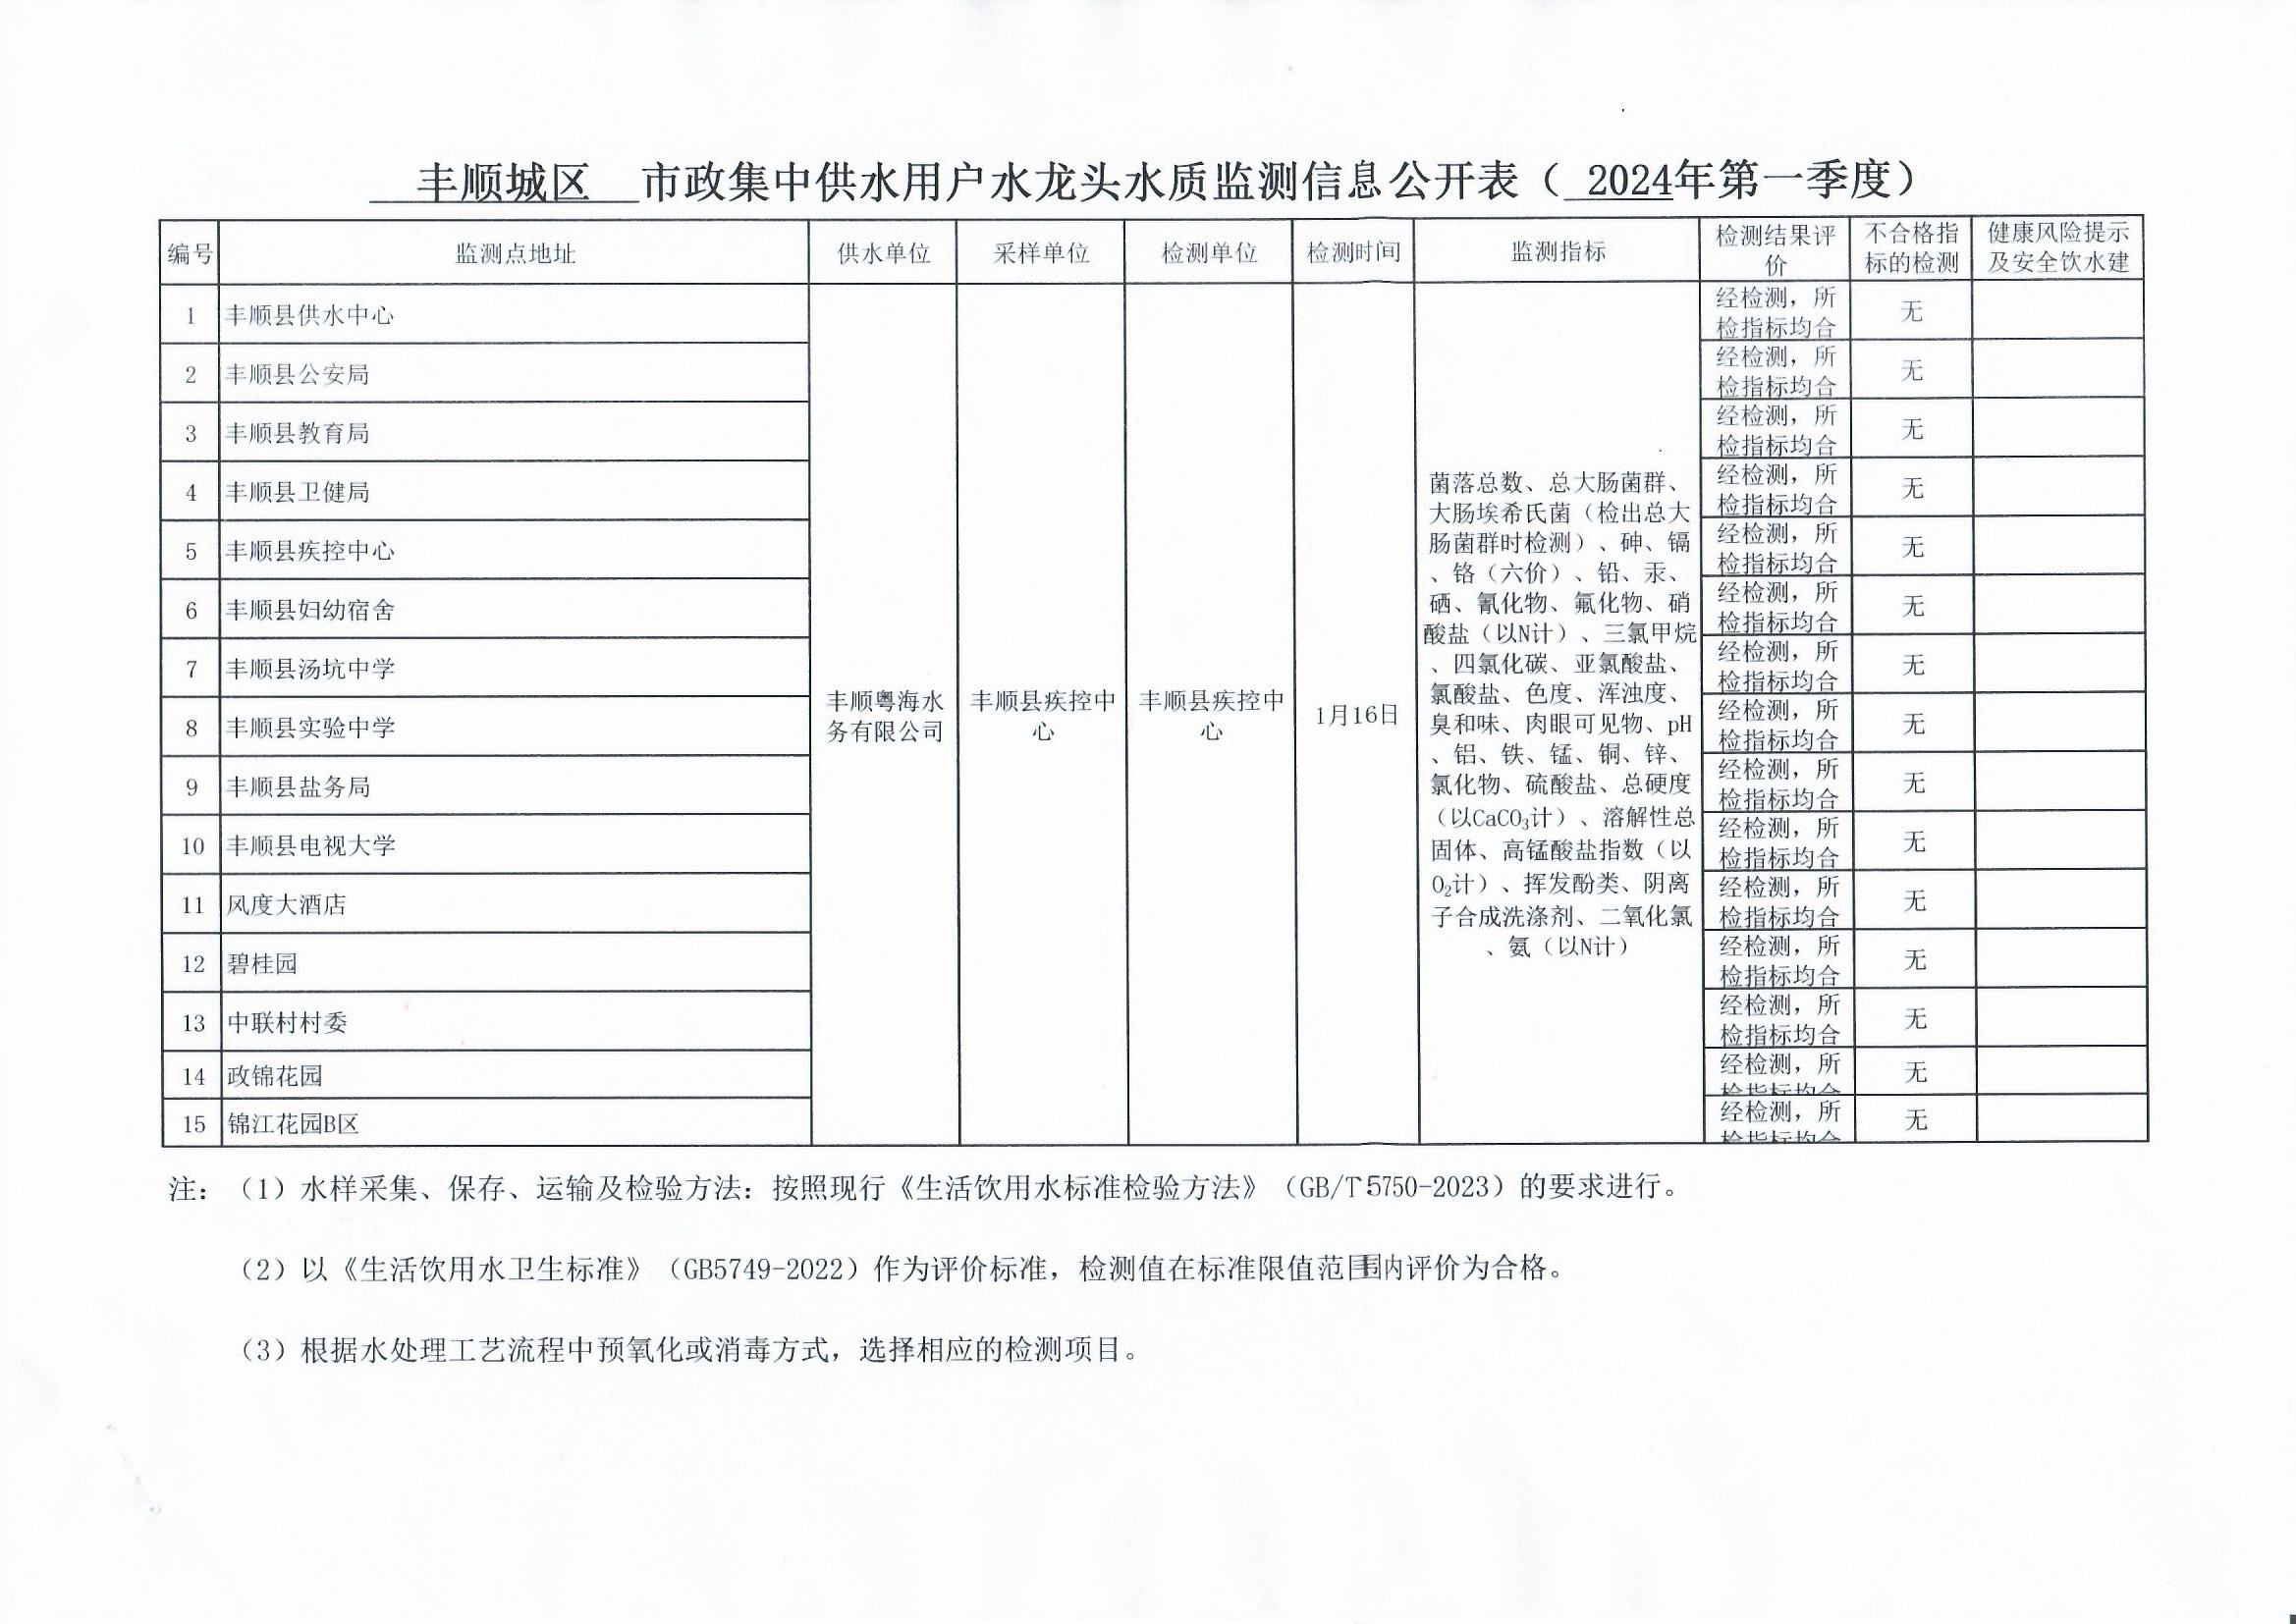 丰顺县城区用户水龙头水质监测信息公开表（2024年第一季度）.jpg